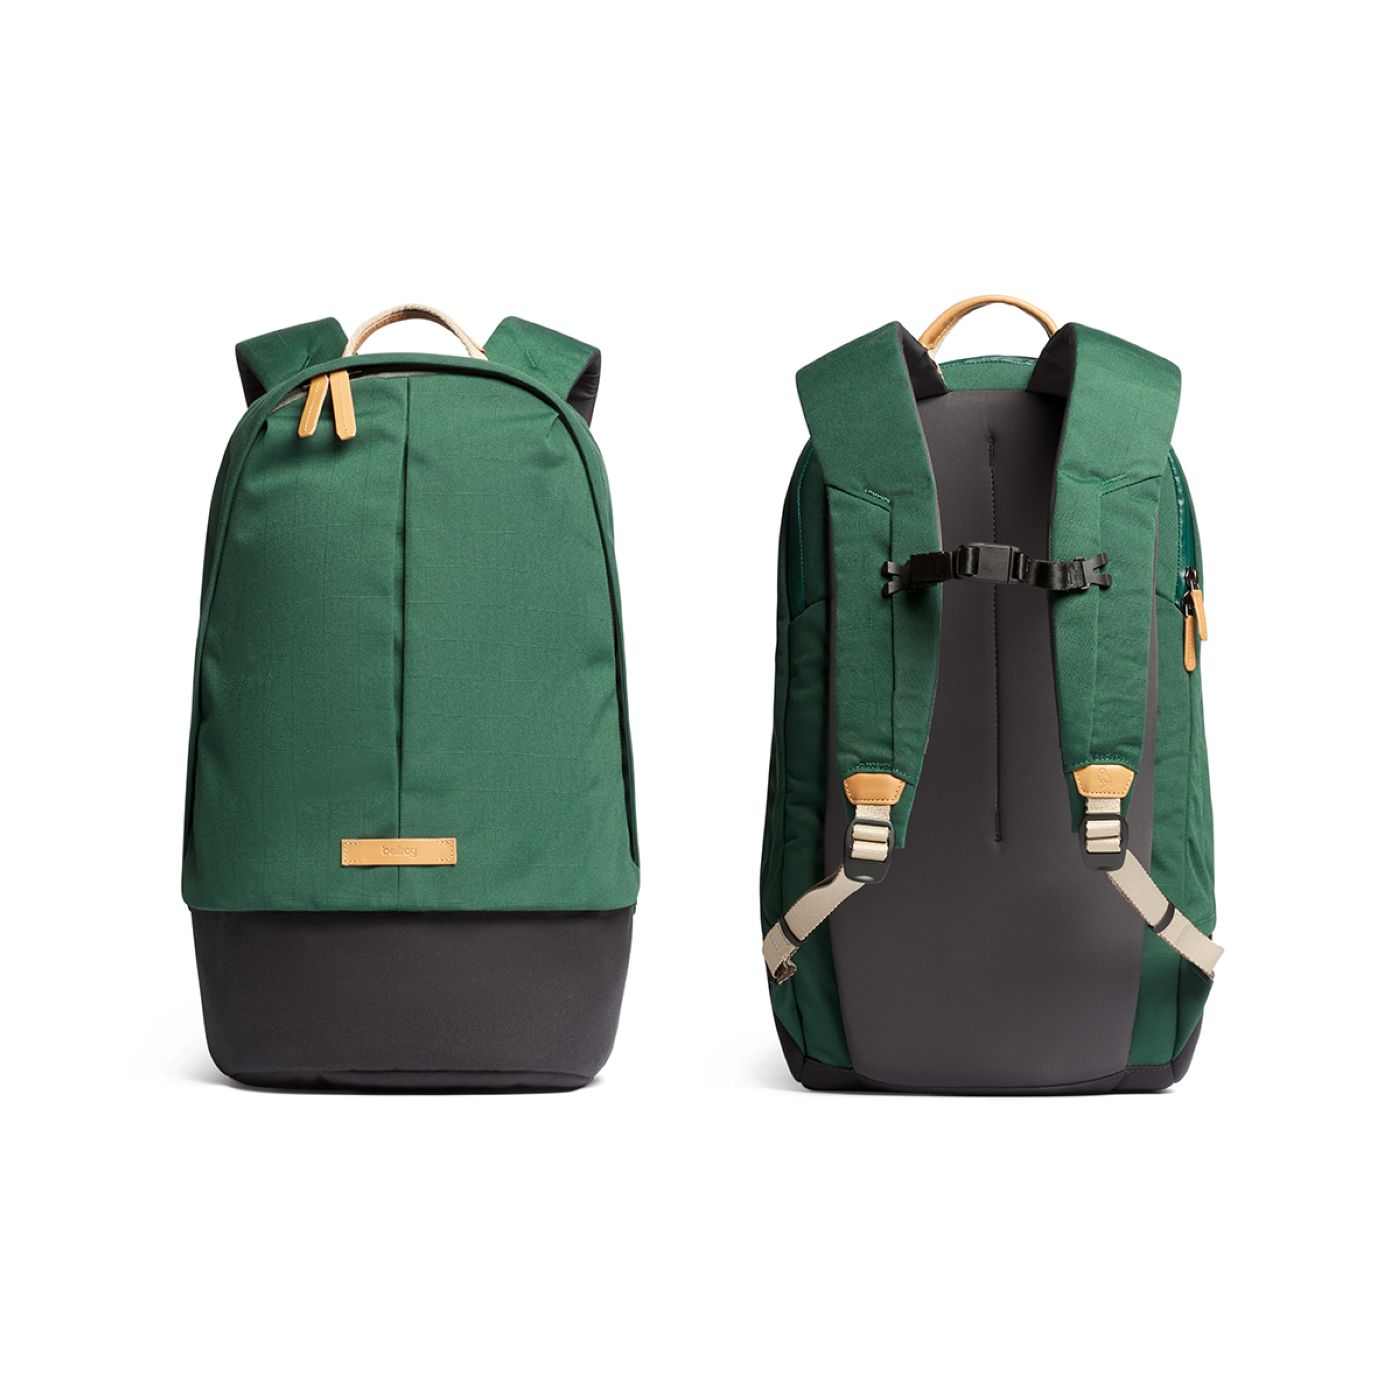 buy backpack malaysia